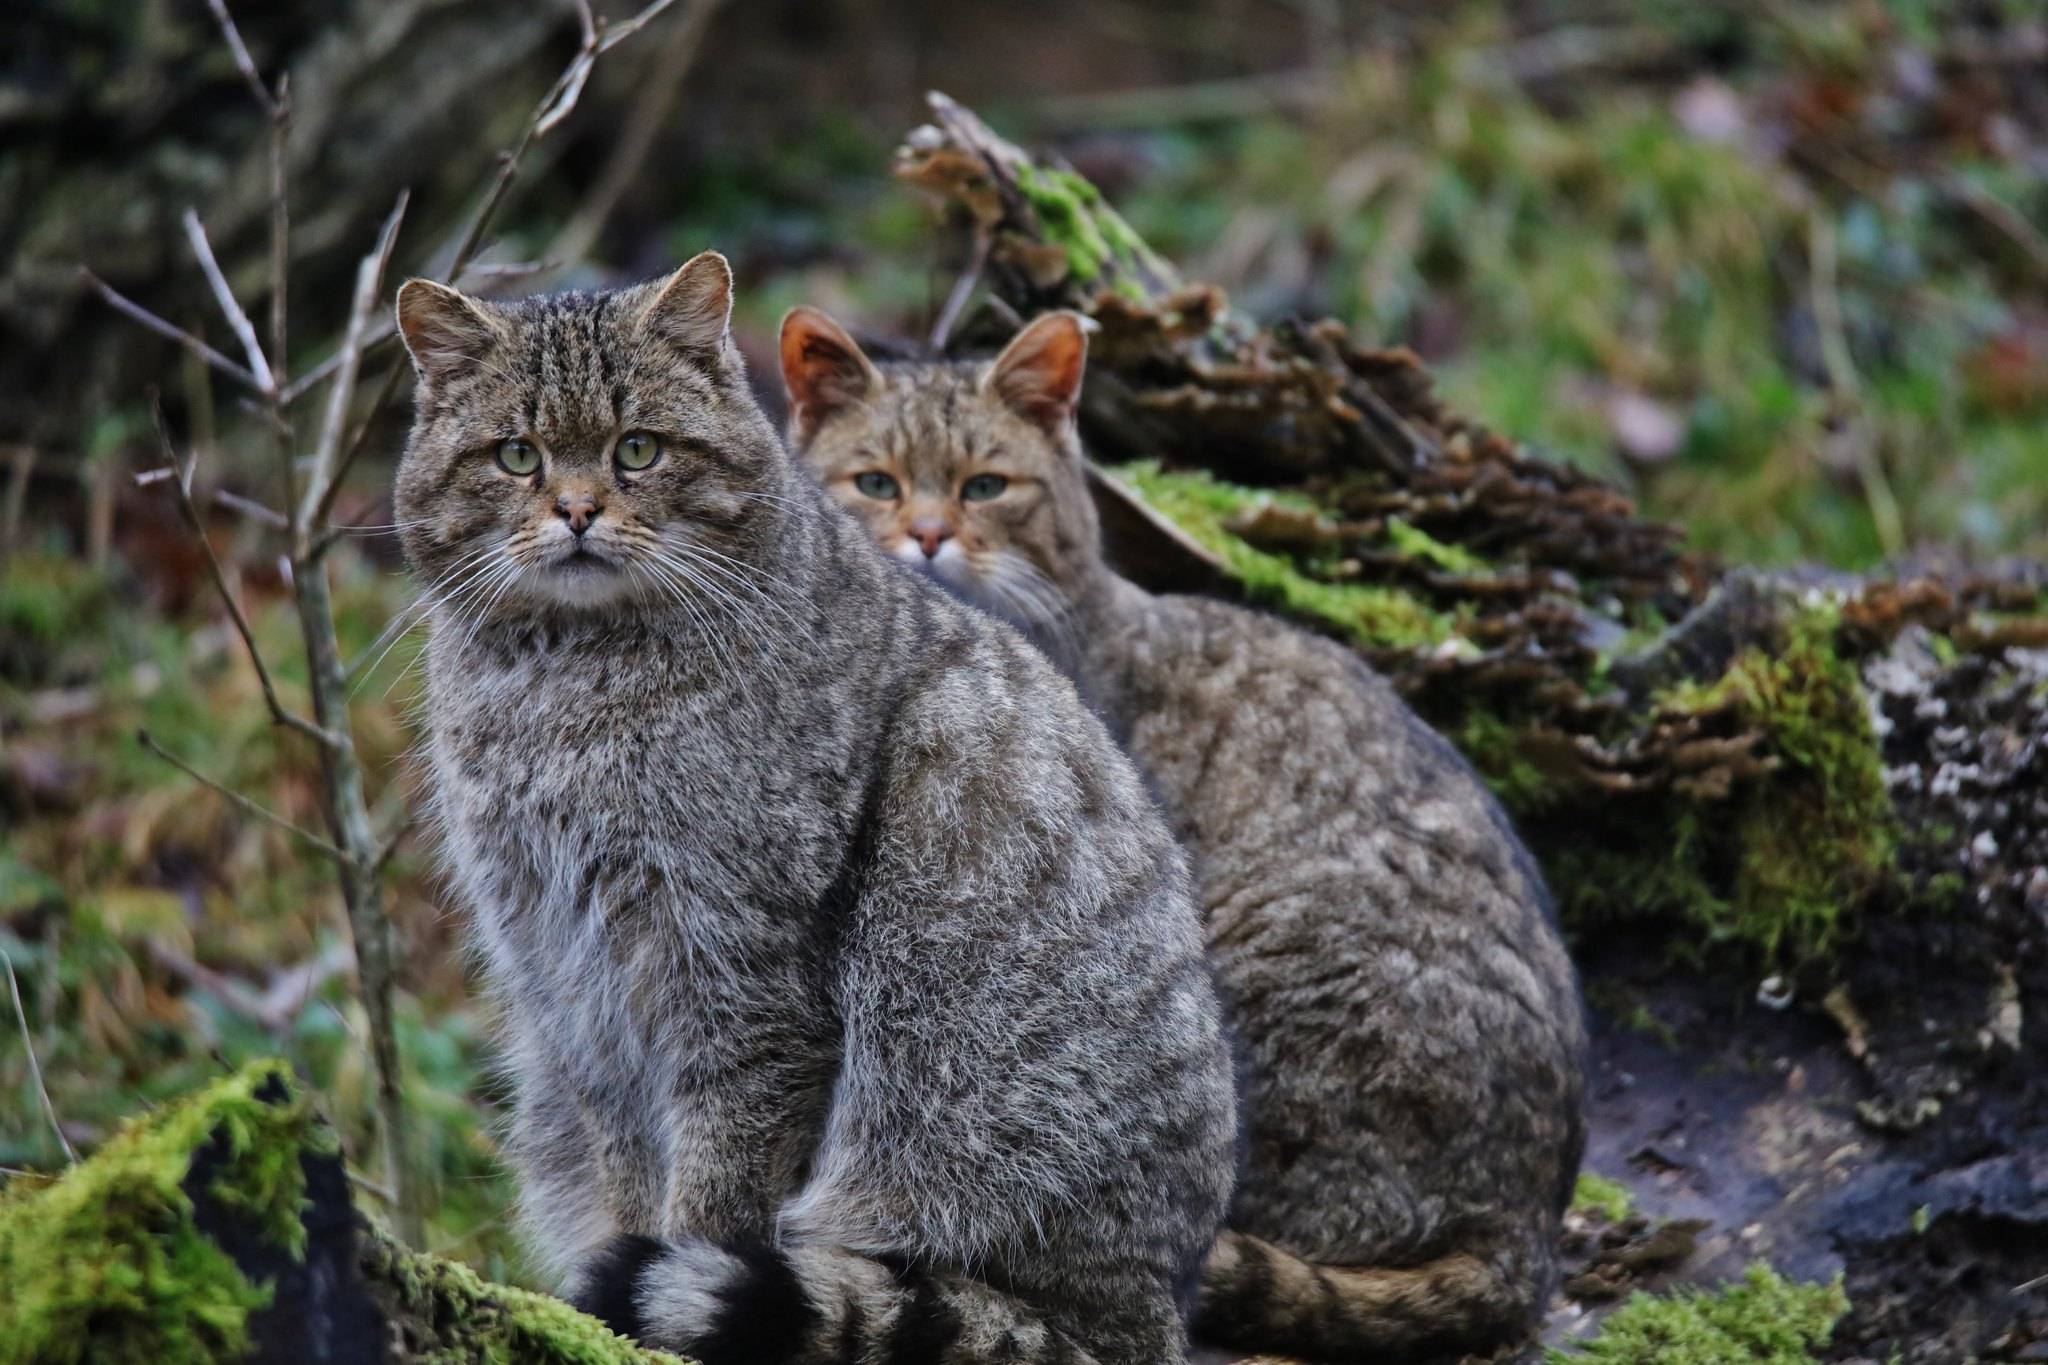 Европейская короткошерстная кошка: описание и характеристика породы - мир кошек